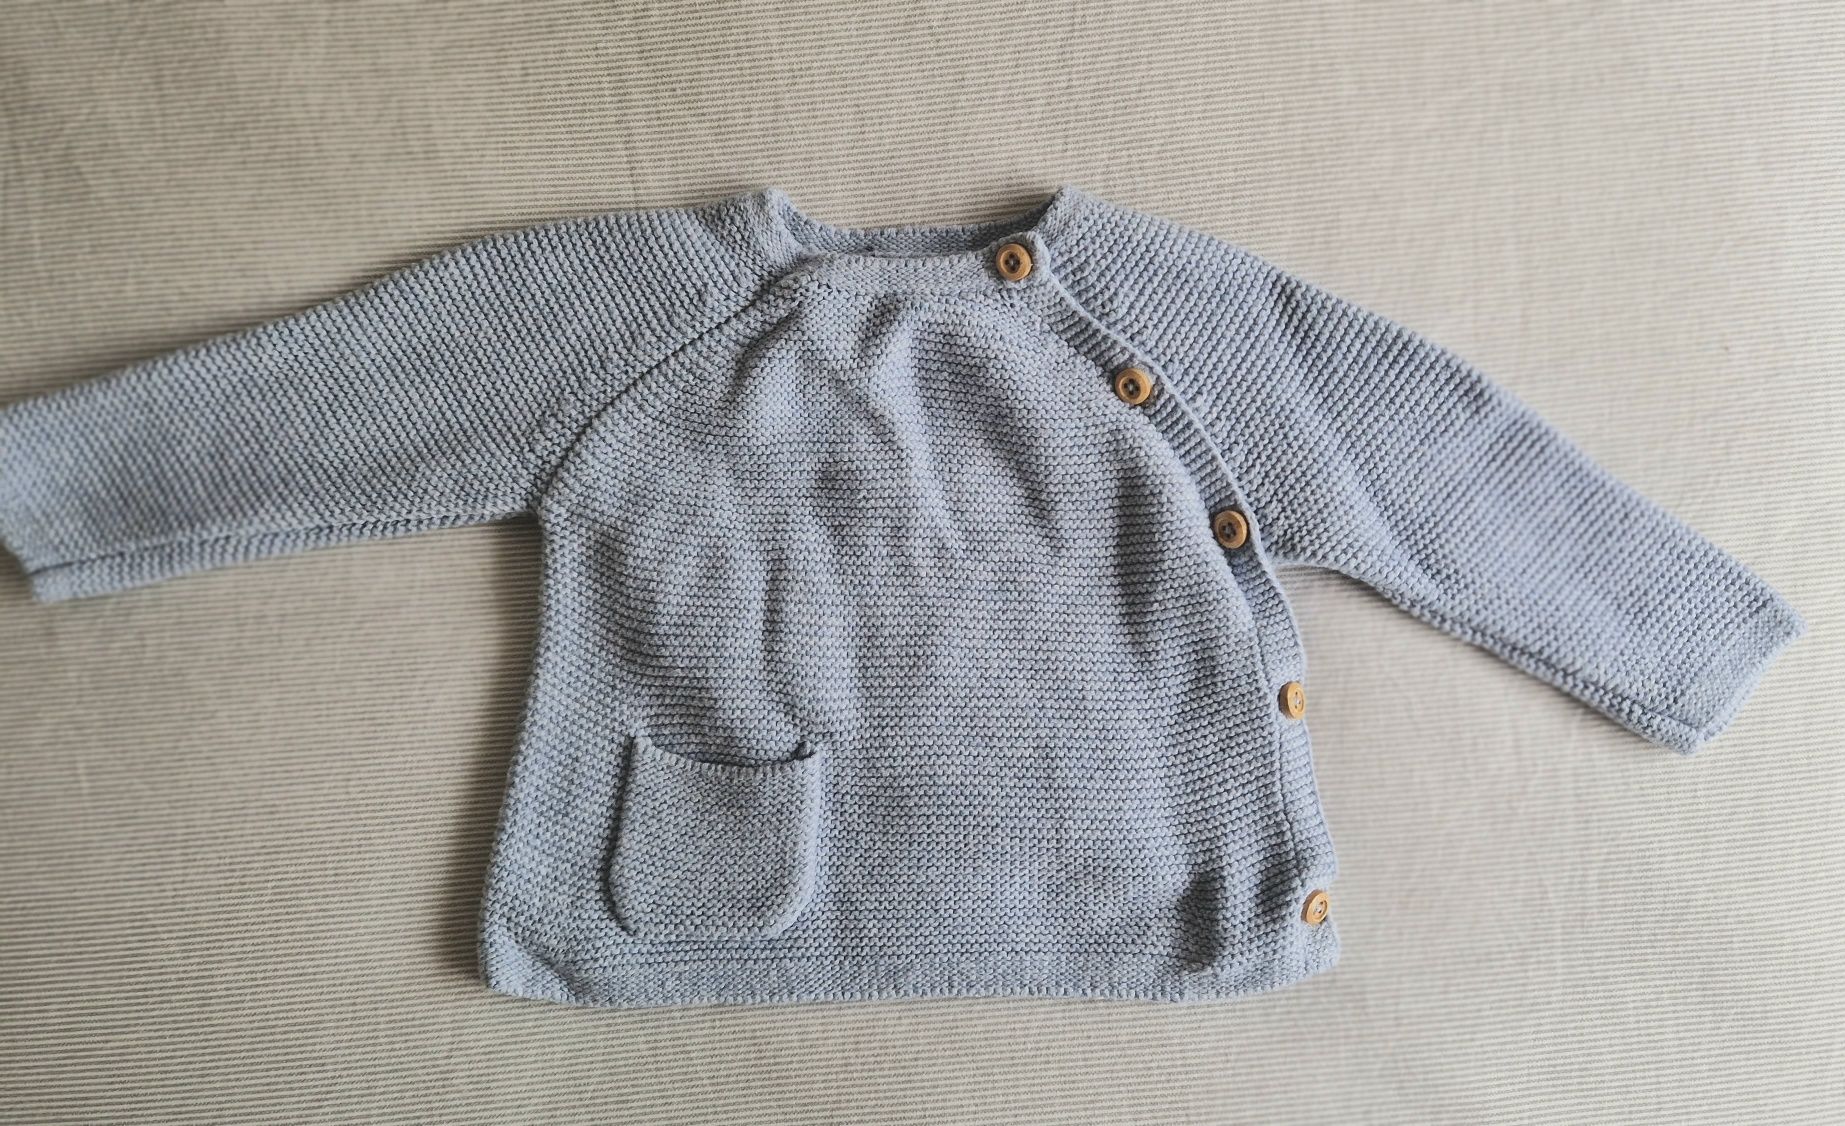 NOVO - Casaco duplo em malha de algodão orgânico 1/3 meses roupa bebé